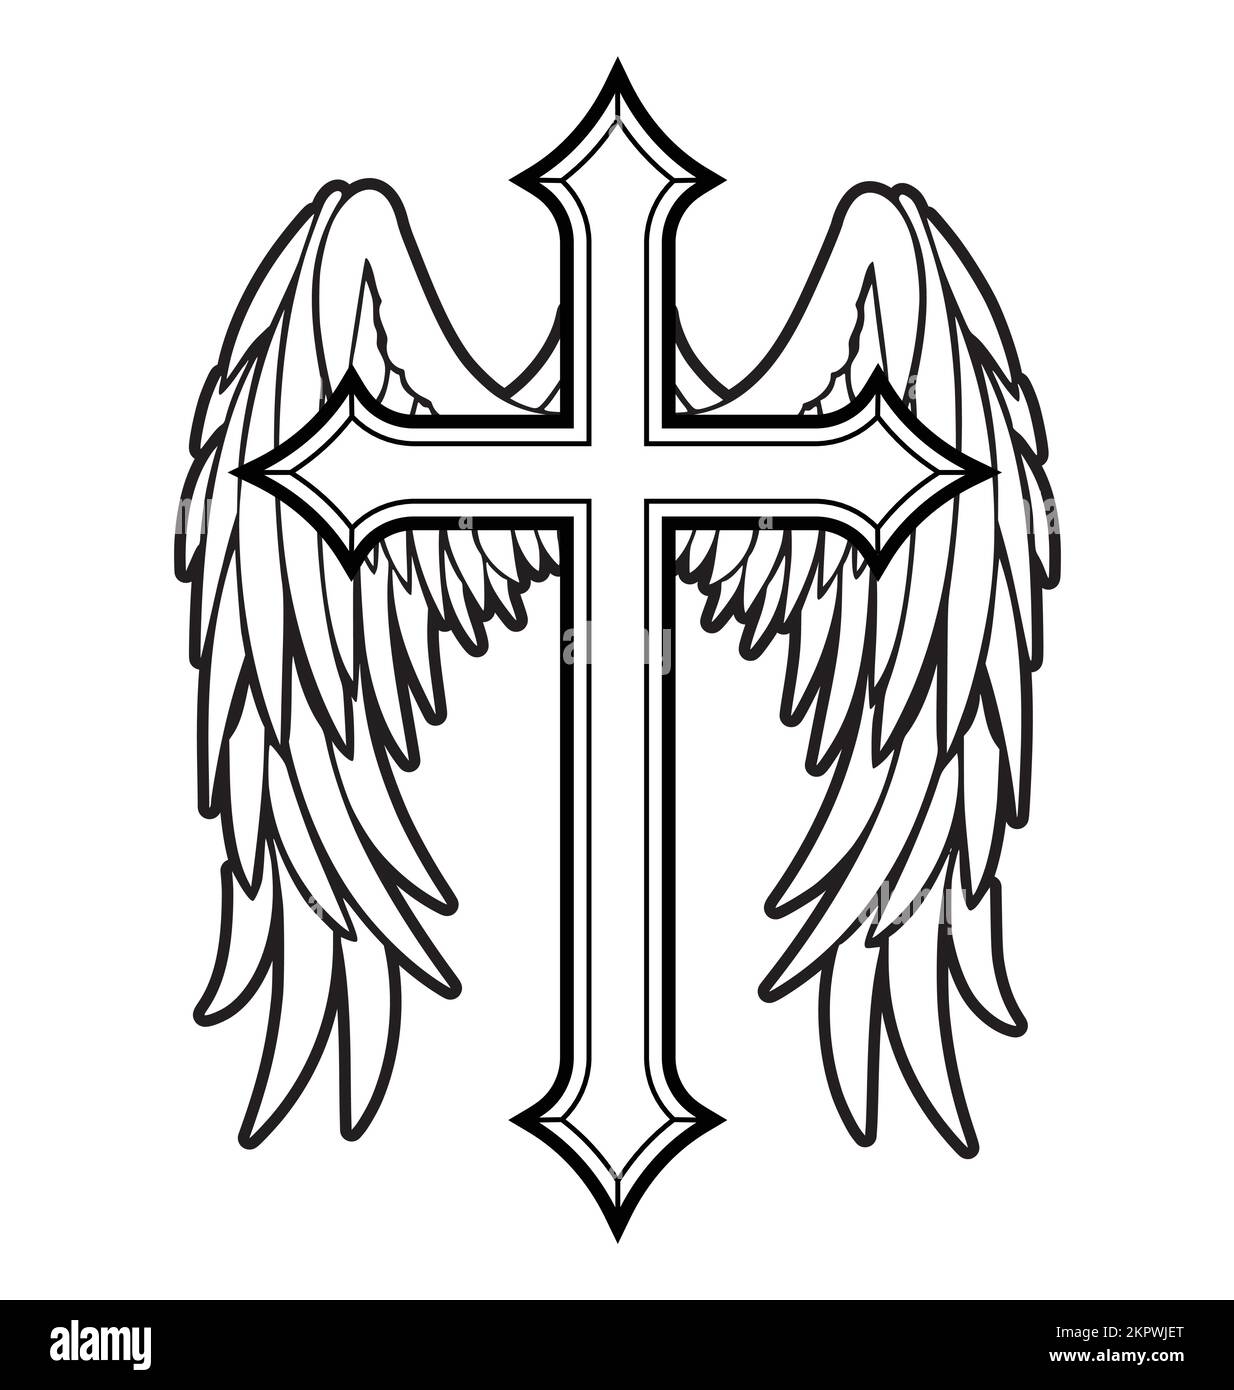 beau vol blanc paix colombe pigeon contour d'oiseau avec silhouette de branche d'olive sur la croix chrétienne crucifix vecteur isolé sur fond blanc Illustration de Vecteur